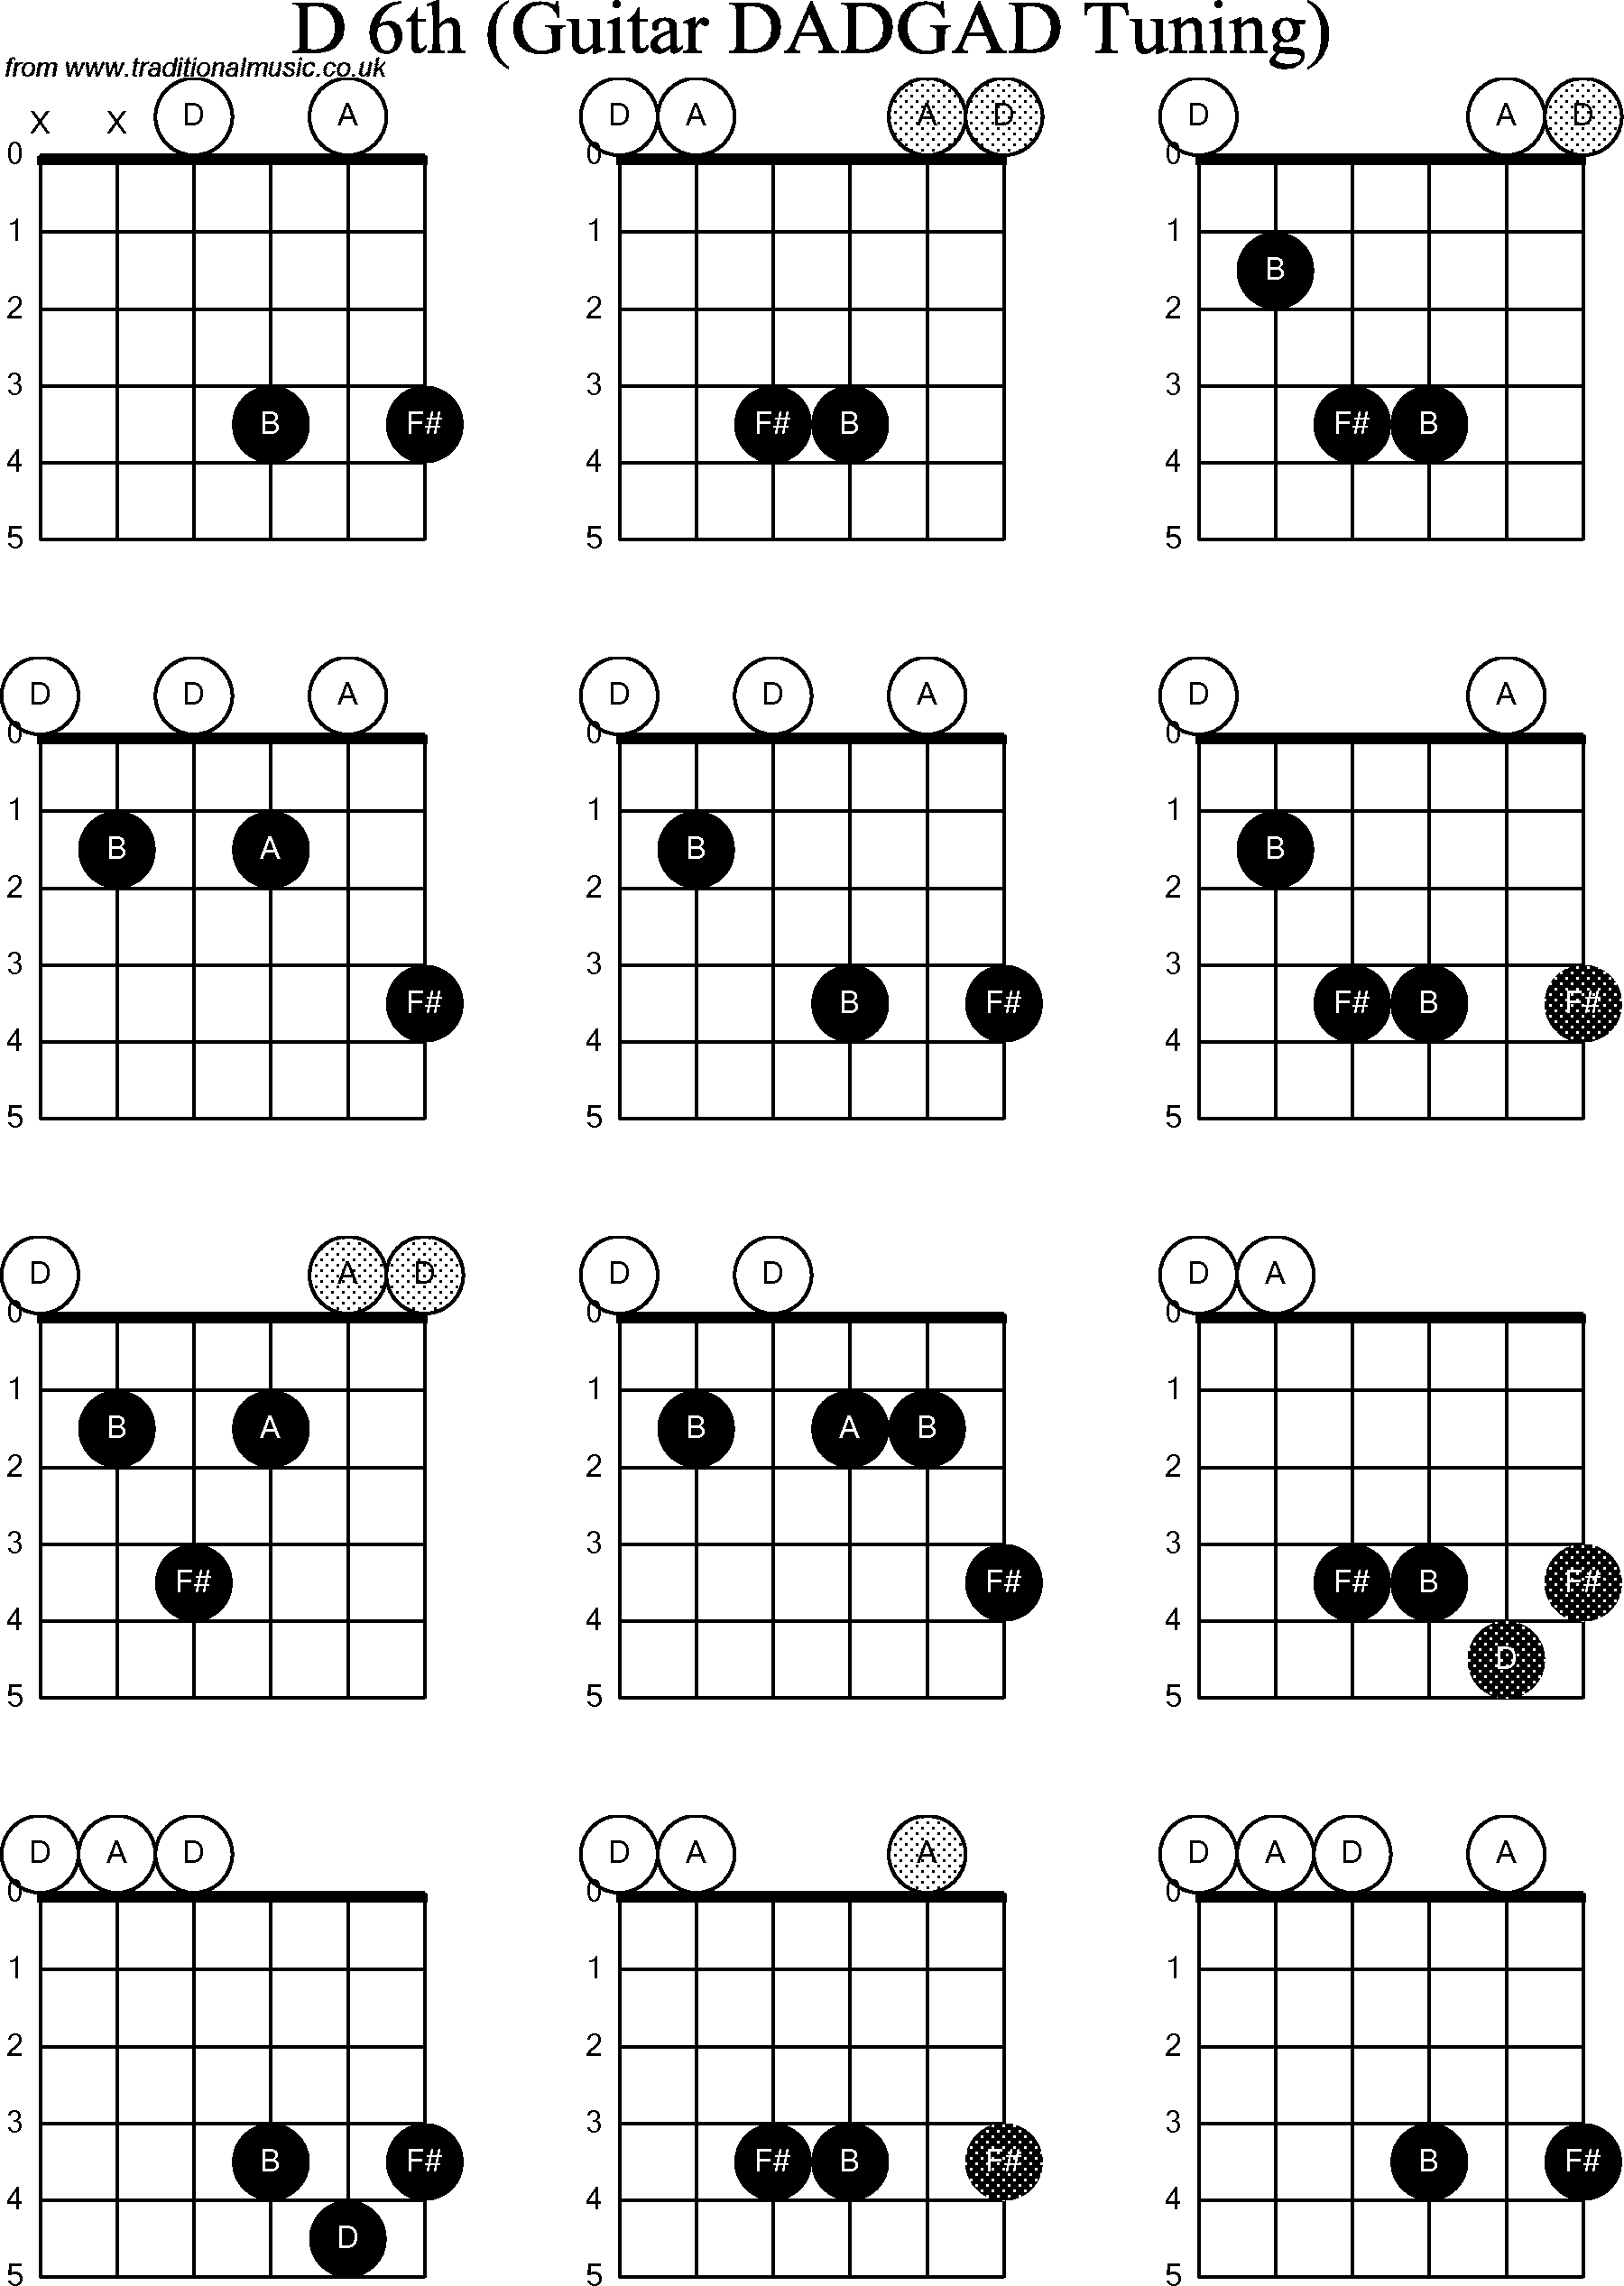 Chord Diagrams for D Modal Guitar(DADGAD), D6th